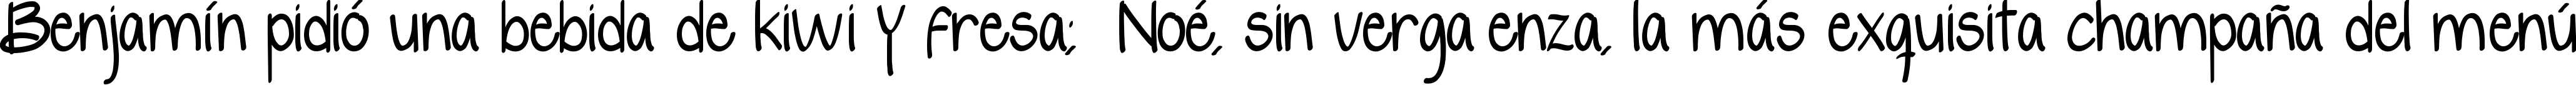 Пример написания шрифтом yelly текста на испанском